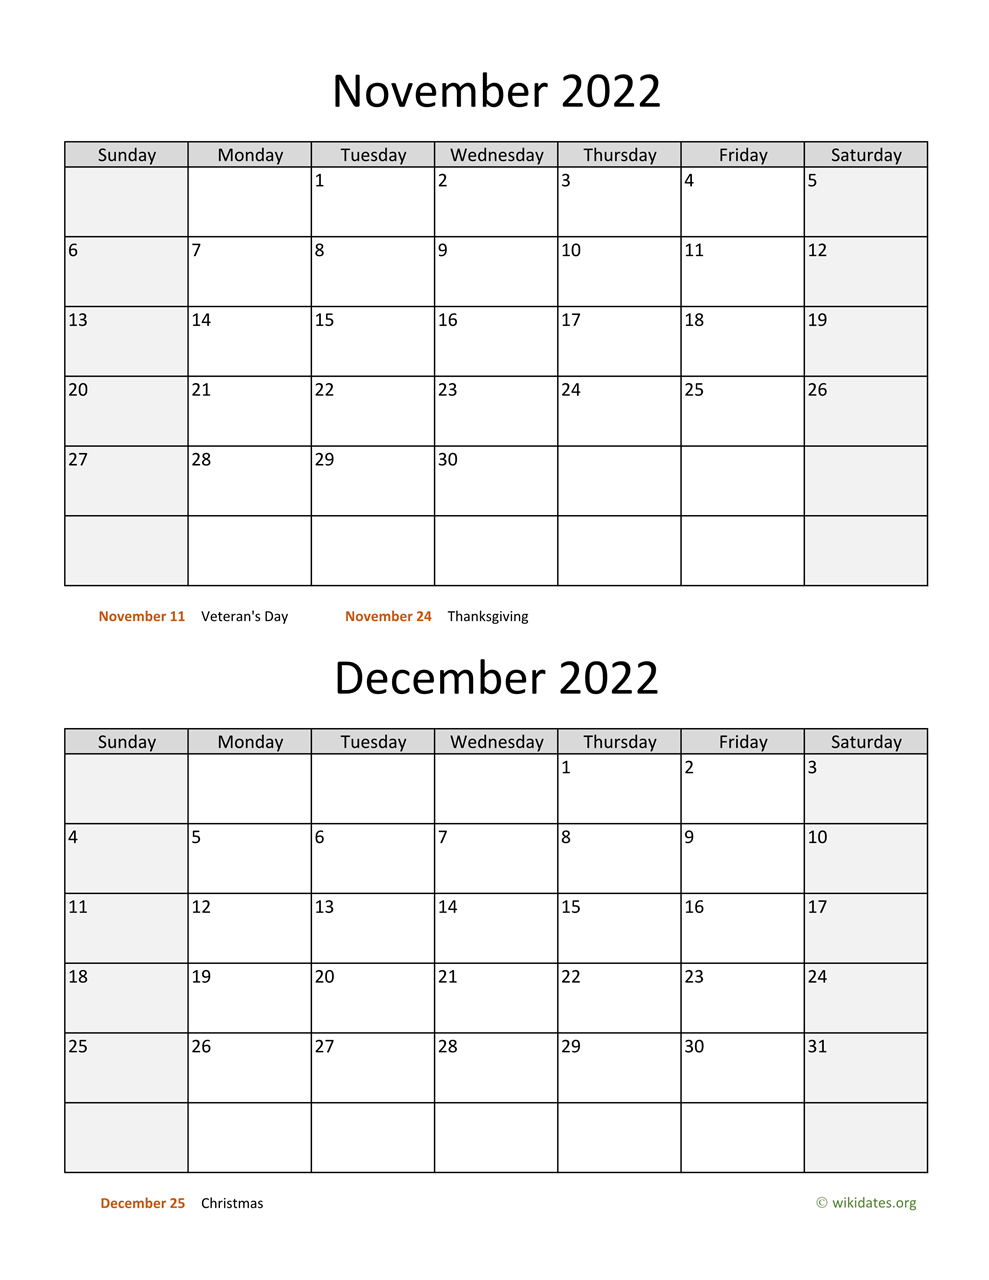 October November December 2022 Calendar November And December 2022 Calendar | Wikidates.org